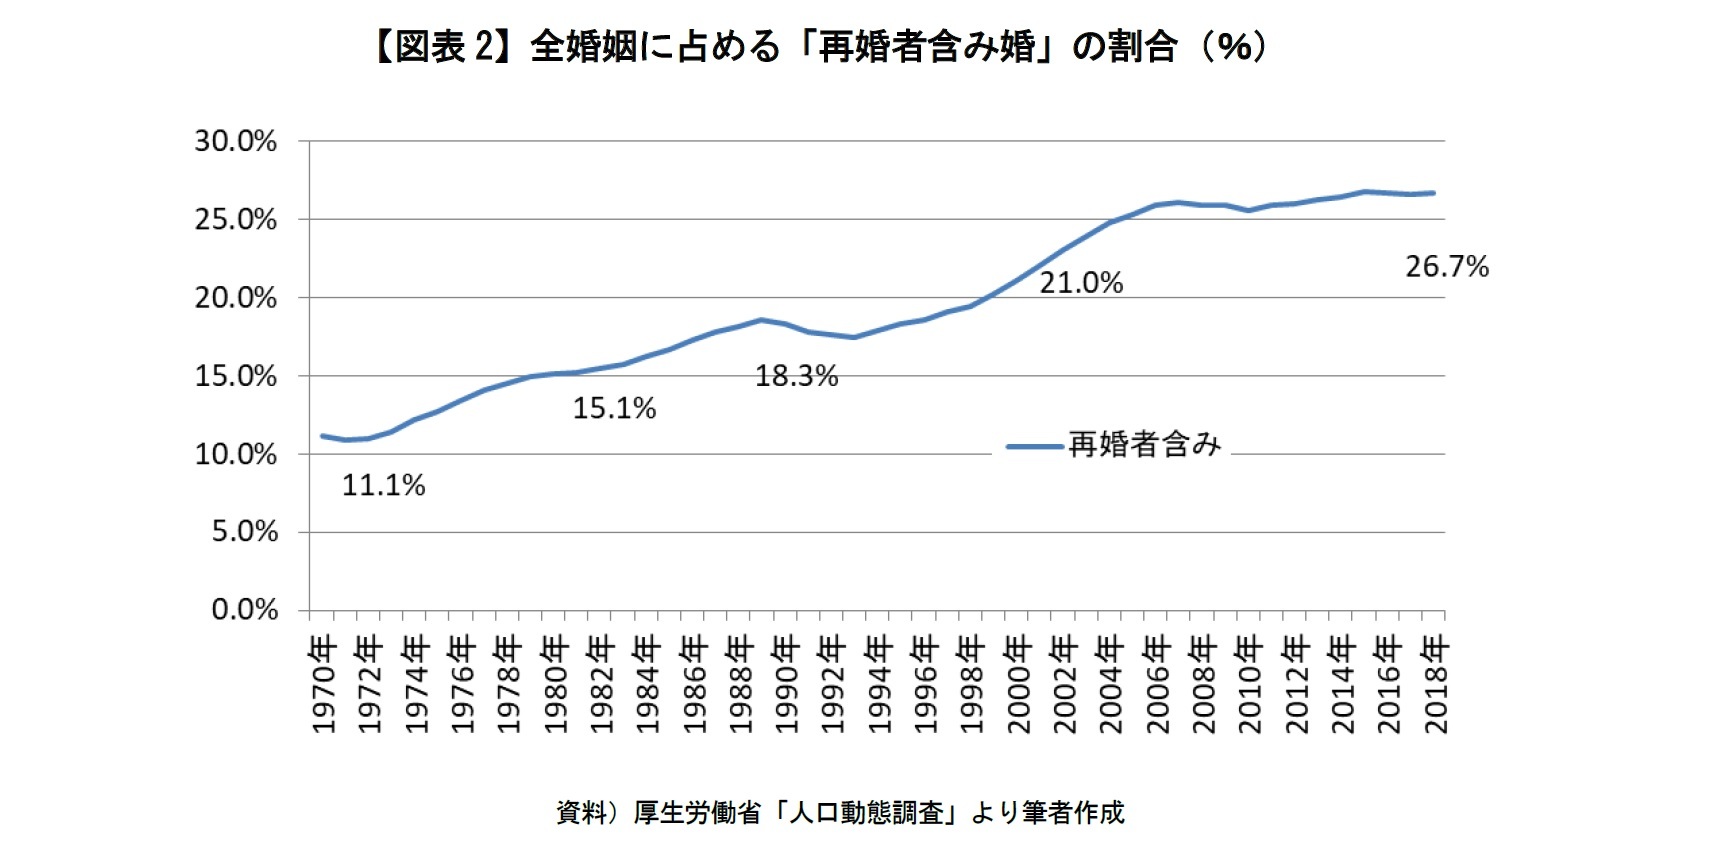 【図表2】全婚姻に占める「再婚者含み婚」の割合（％）